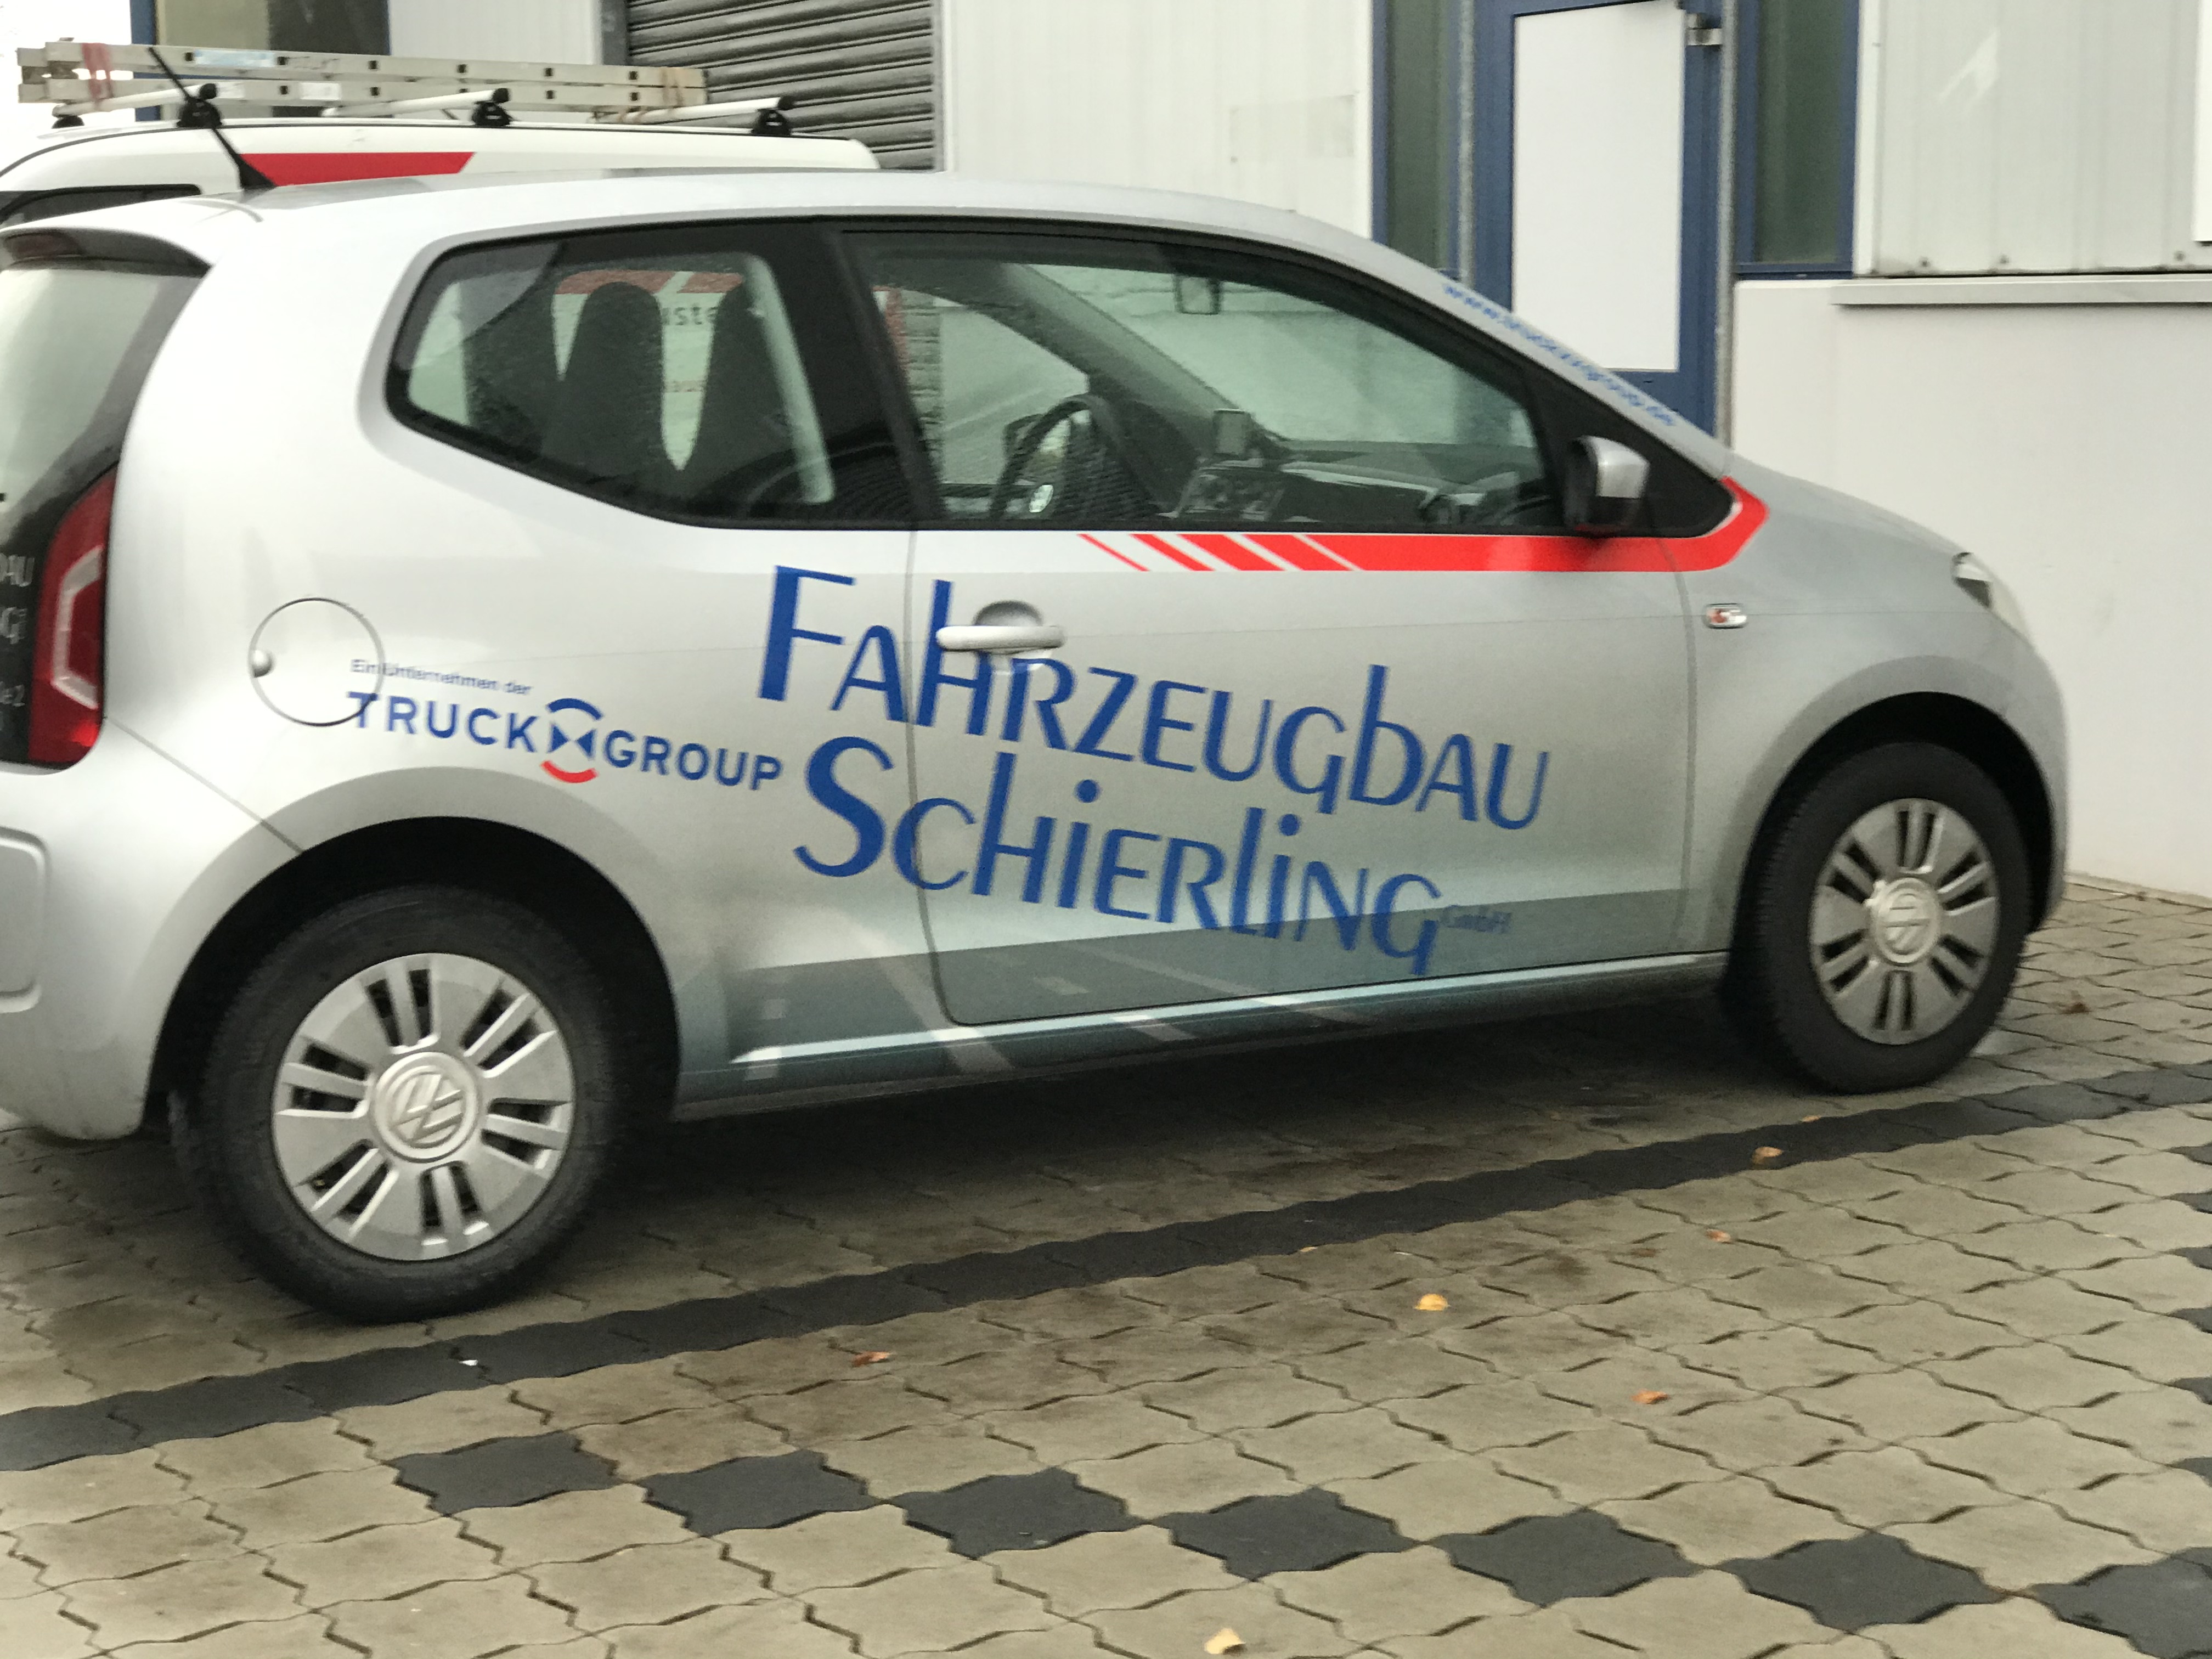 Bild 1 Fahrzeugbau Schierling GmbH in Hameln